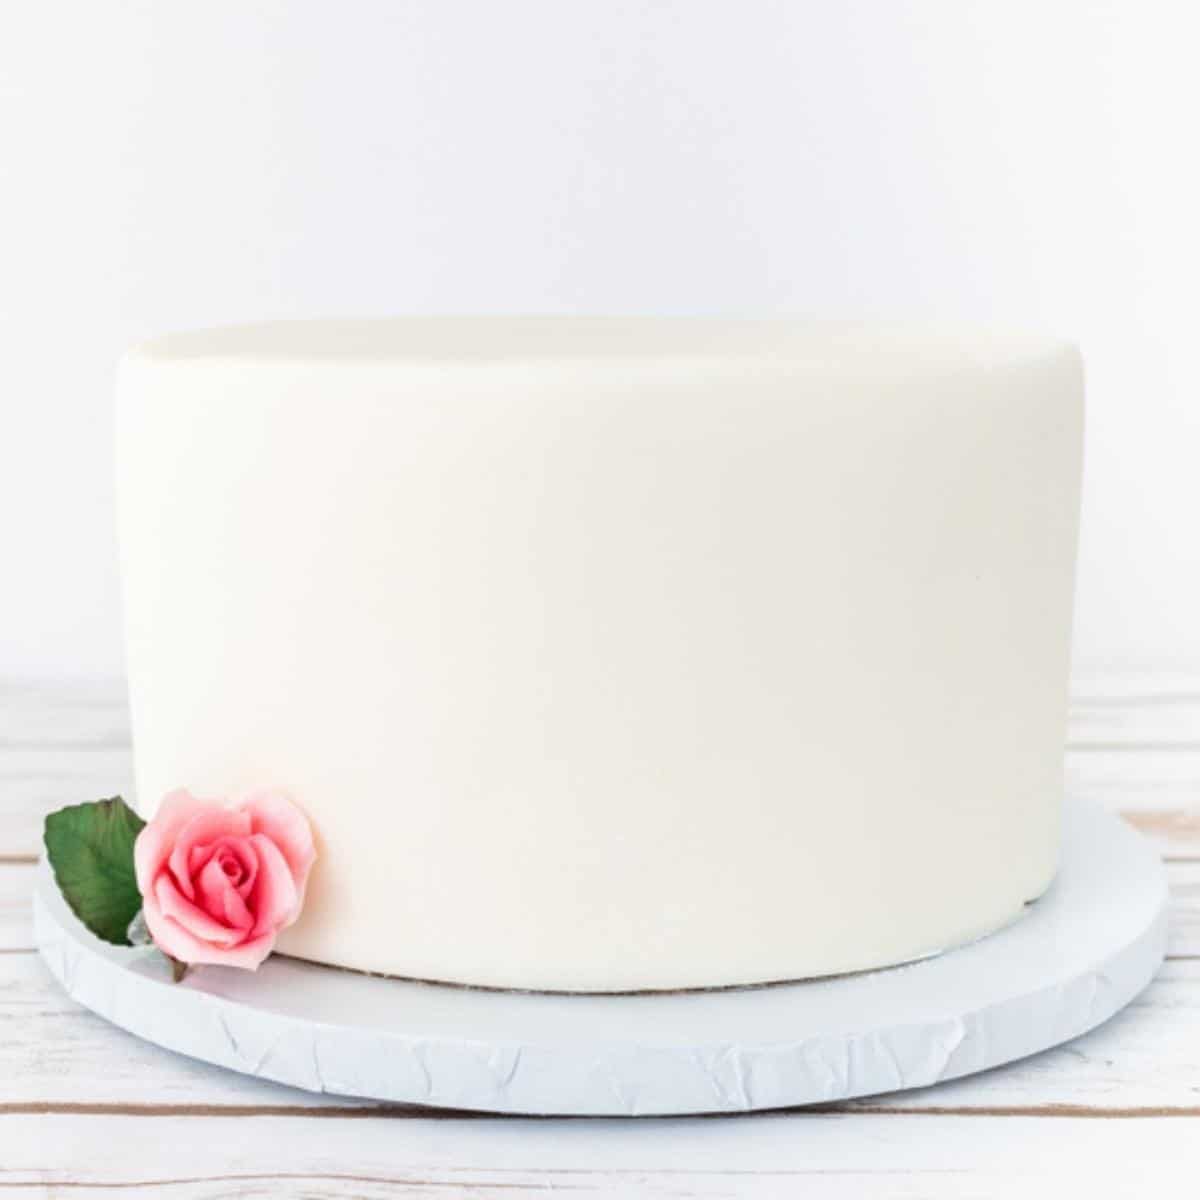 plain white fondant cake